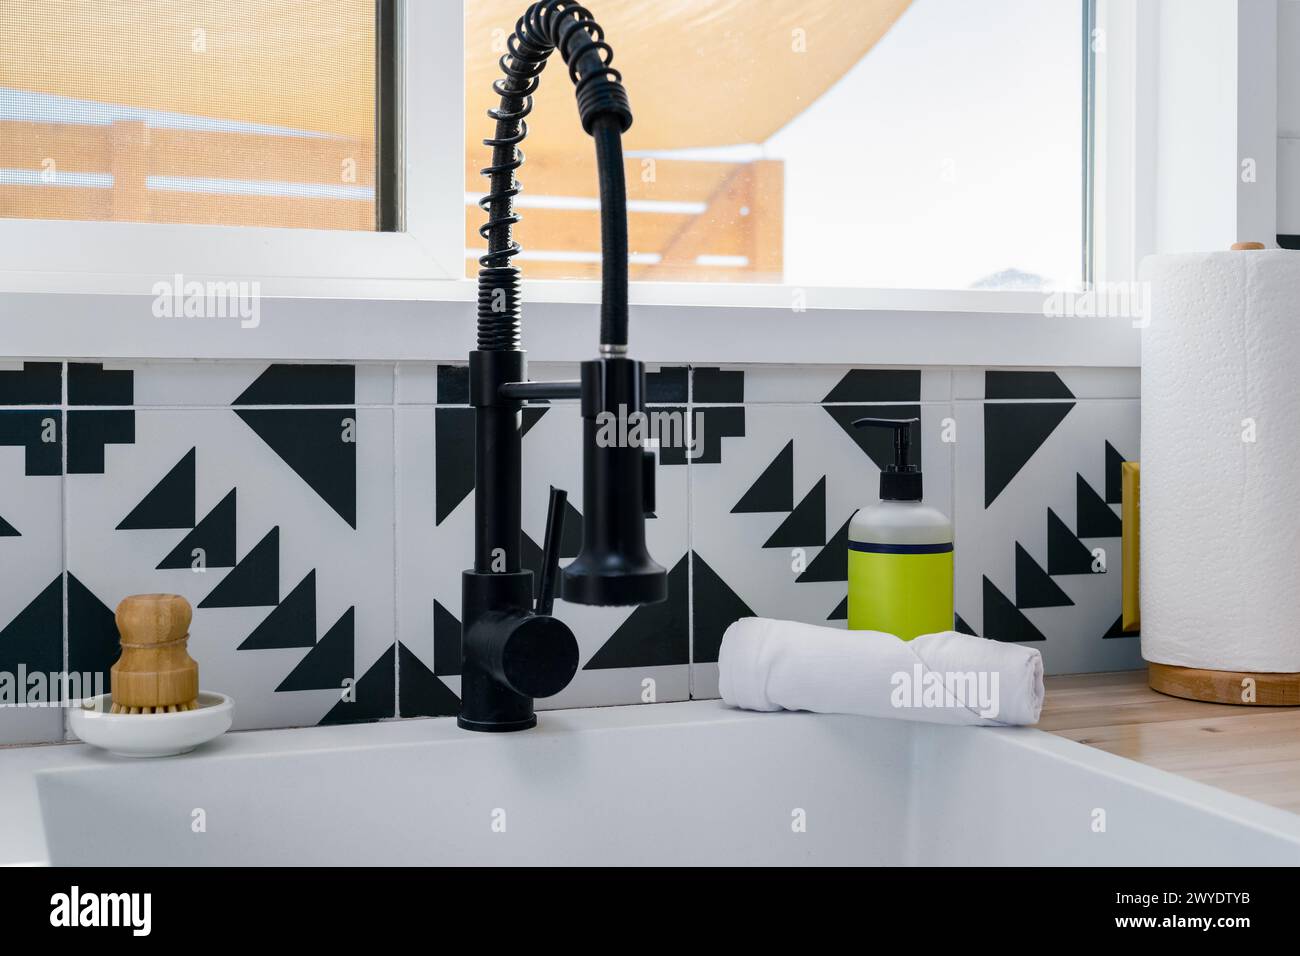 Évier de robinet et distributeur de savon à une fenêtre de cuisine dans une cuisine moderne avec des carreaux noirs et blancs Banque D'Images